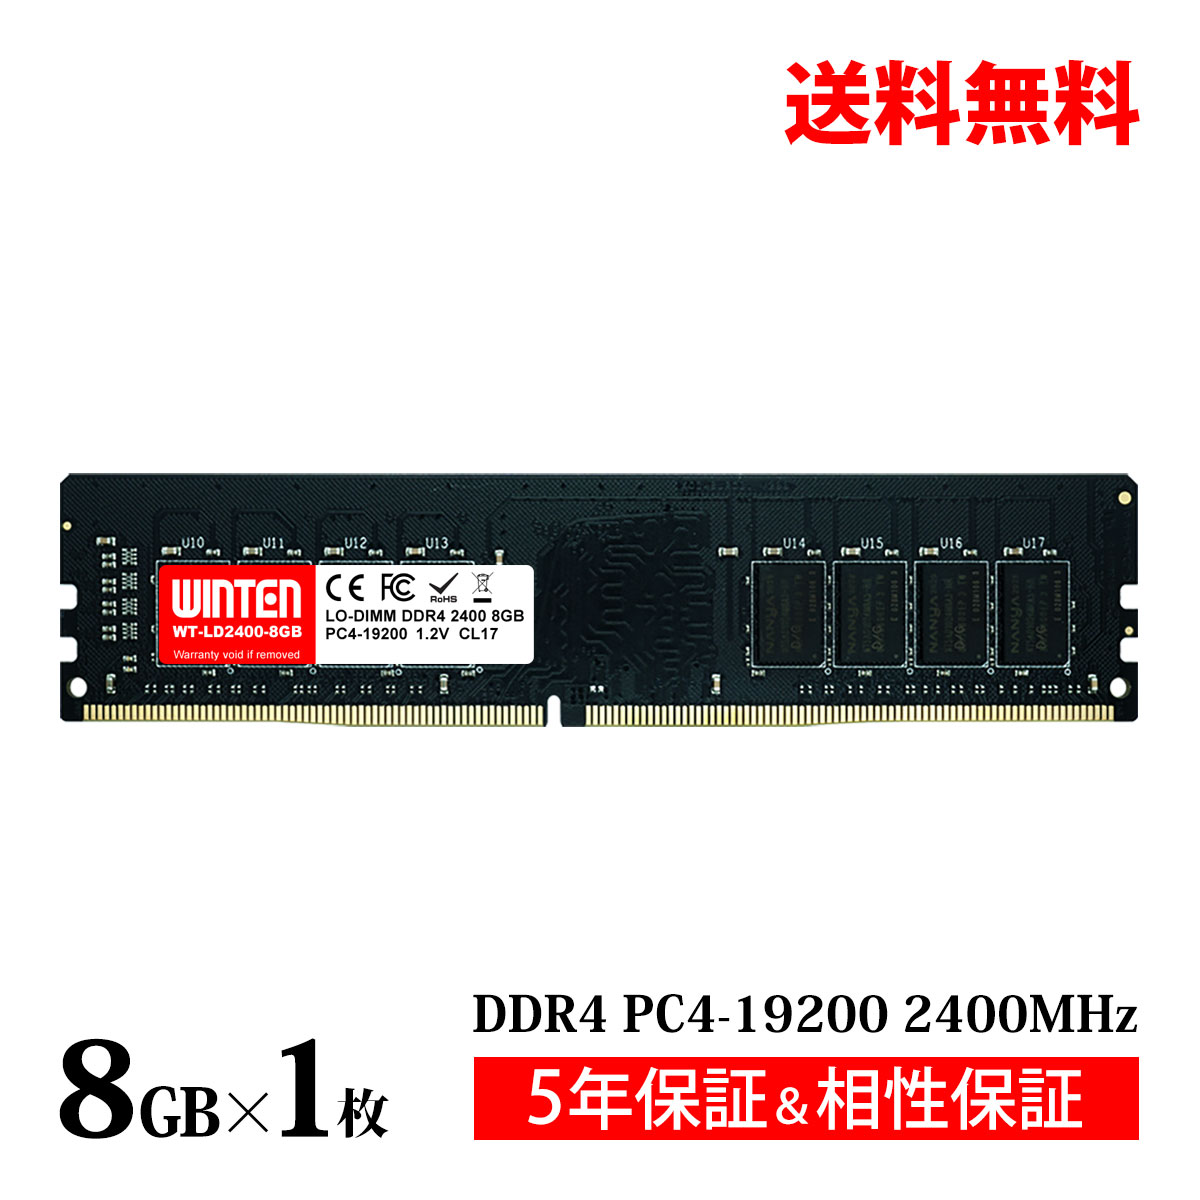 デスクトップPC用 メモリ 8GB PC4-19200(DDR4 2400) WT-LD2400-8GB【相性保証 製品5年保証 送料無料 即日出荷】DDR4 …